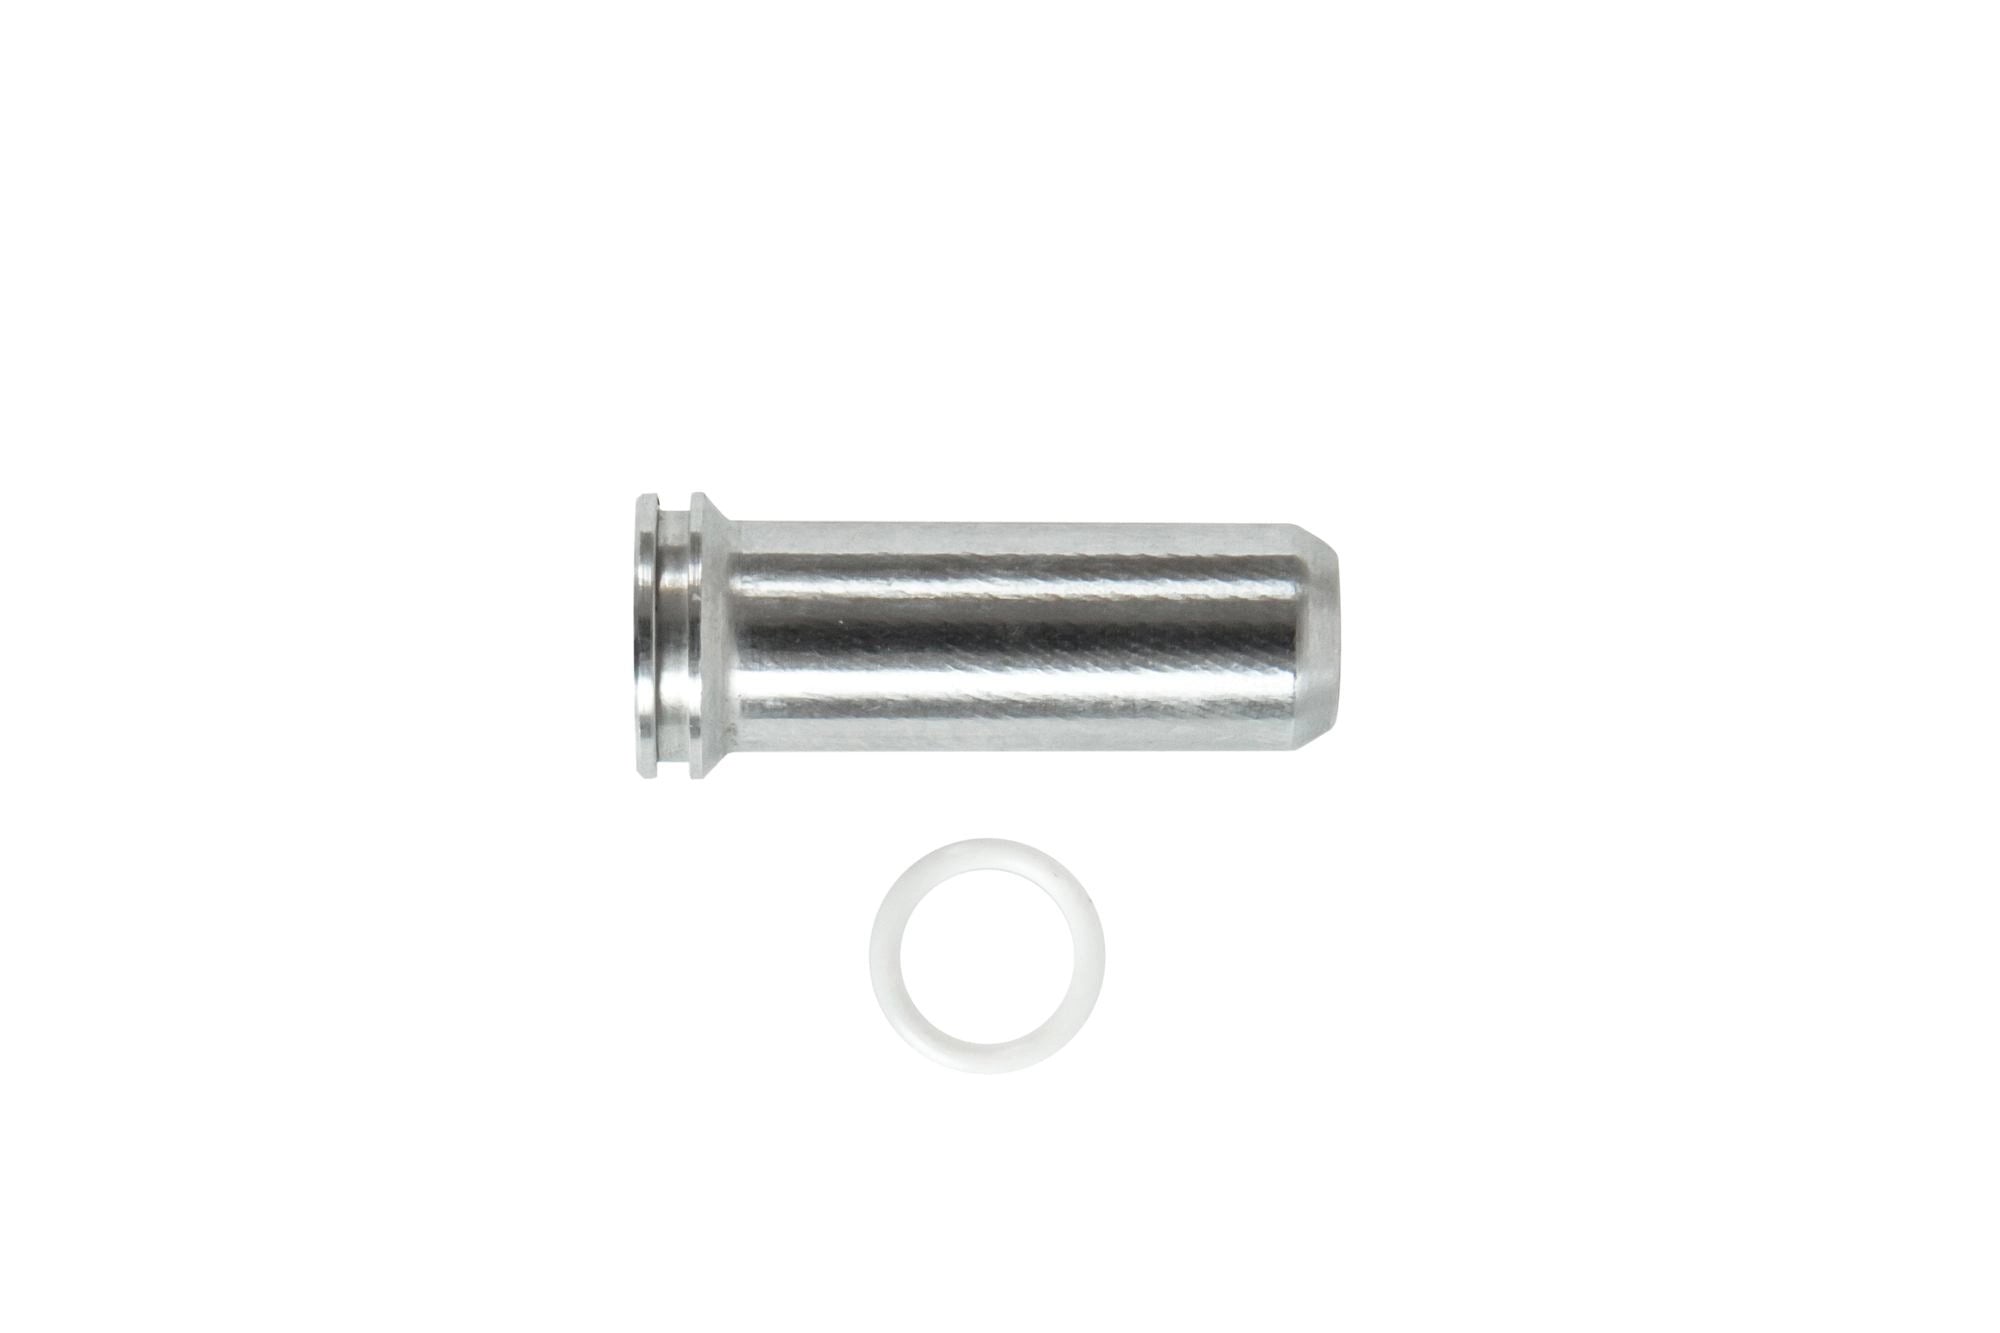 Aluminum CNC Nozzle - 24.5 mm